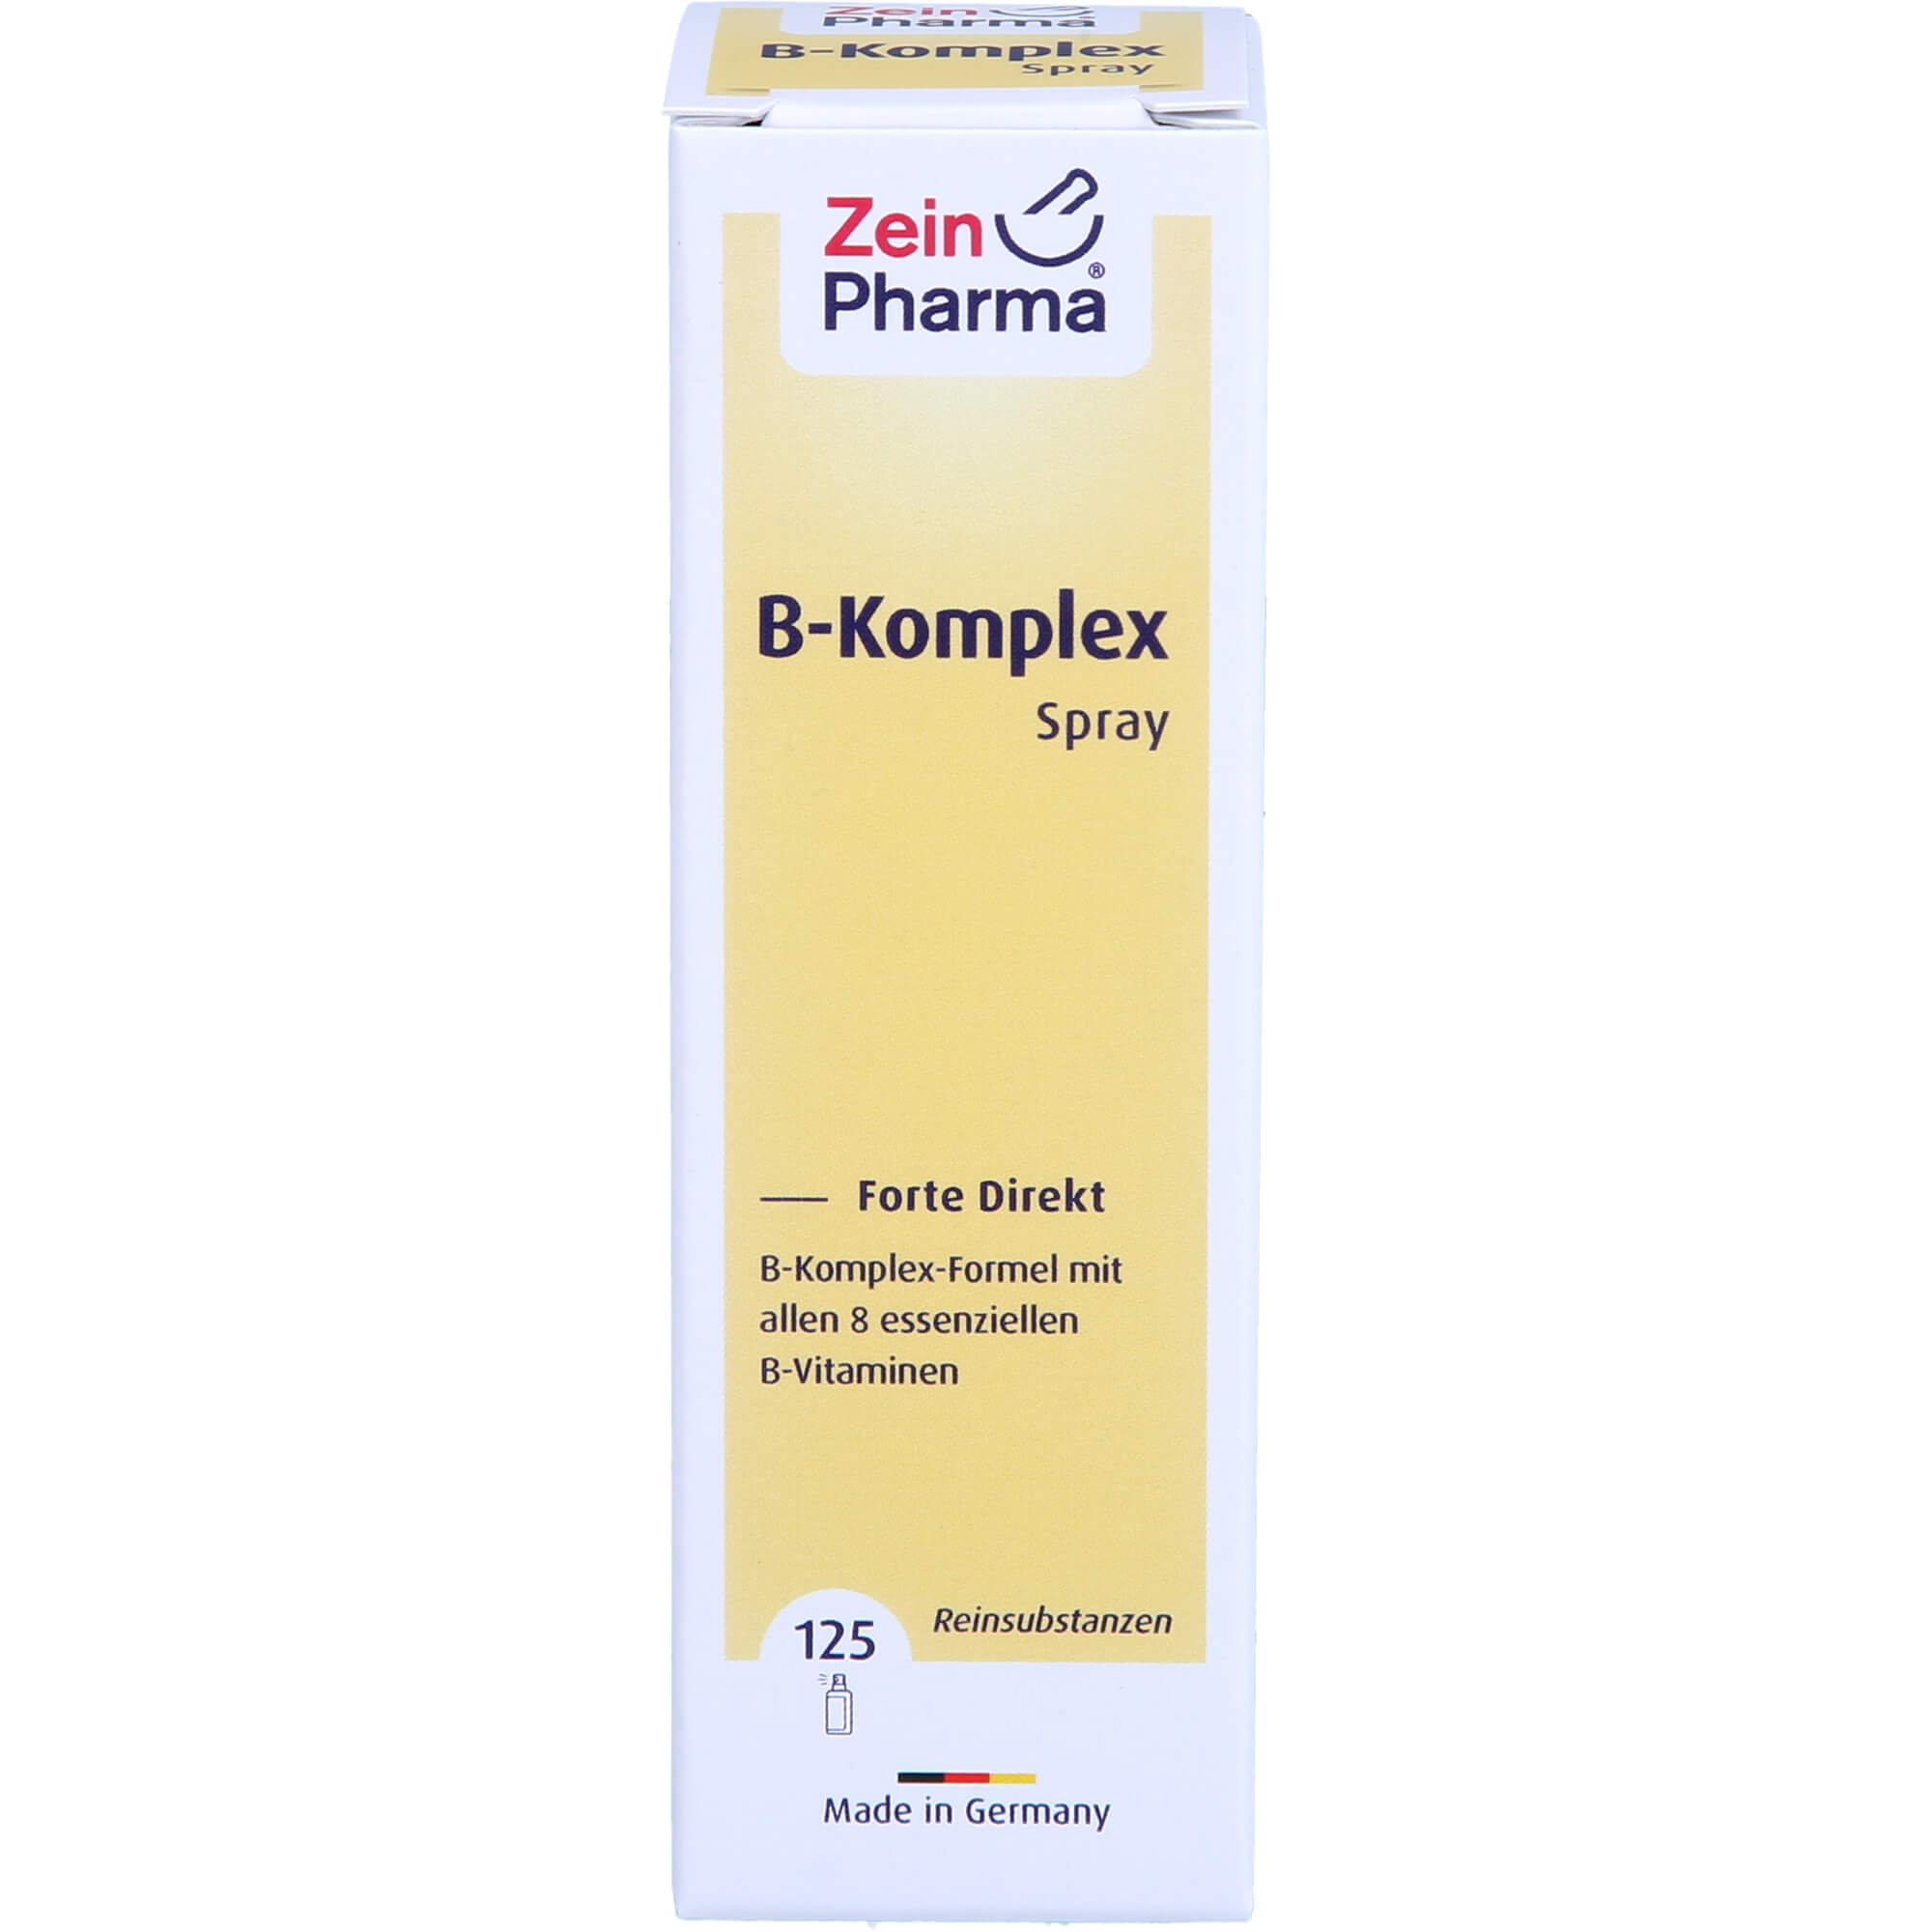 B-KOMPLEX Forte Direkt Spray Orange